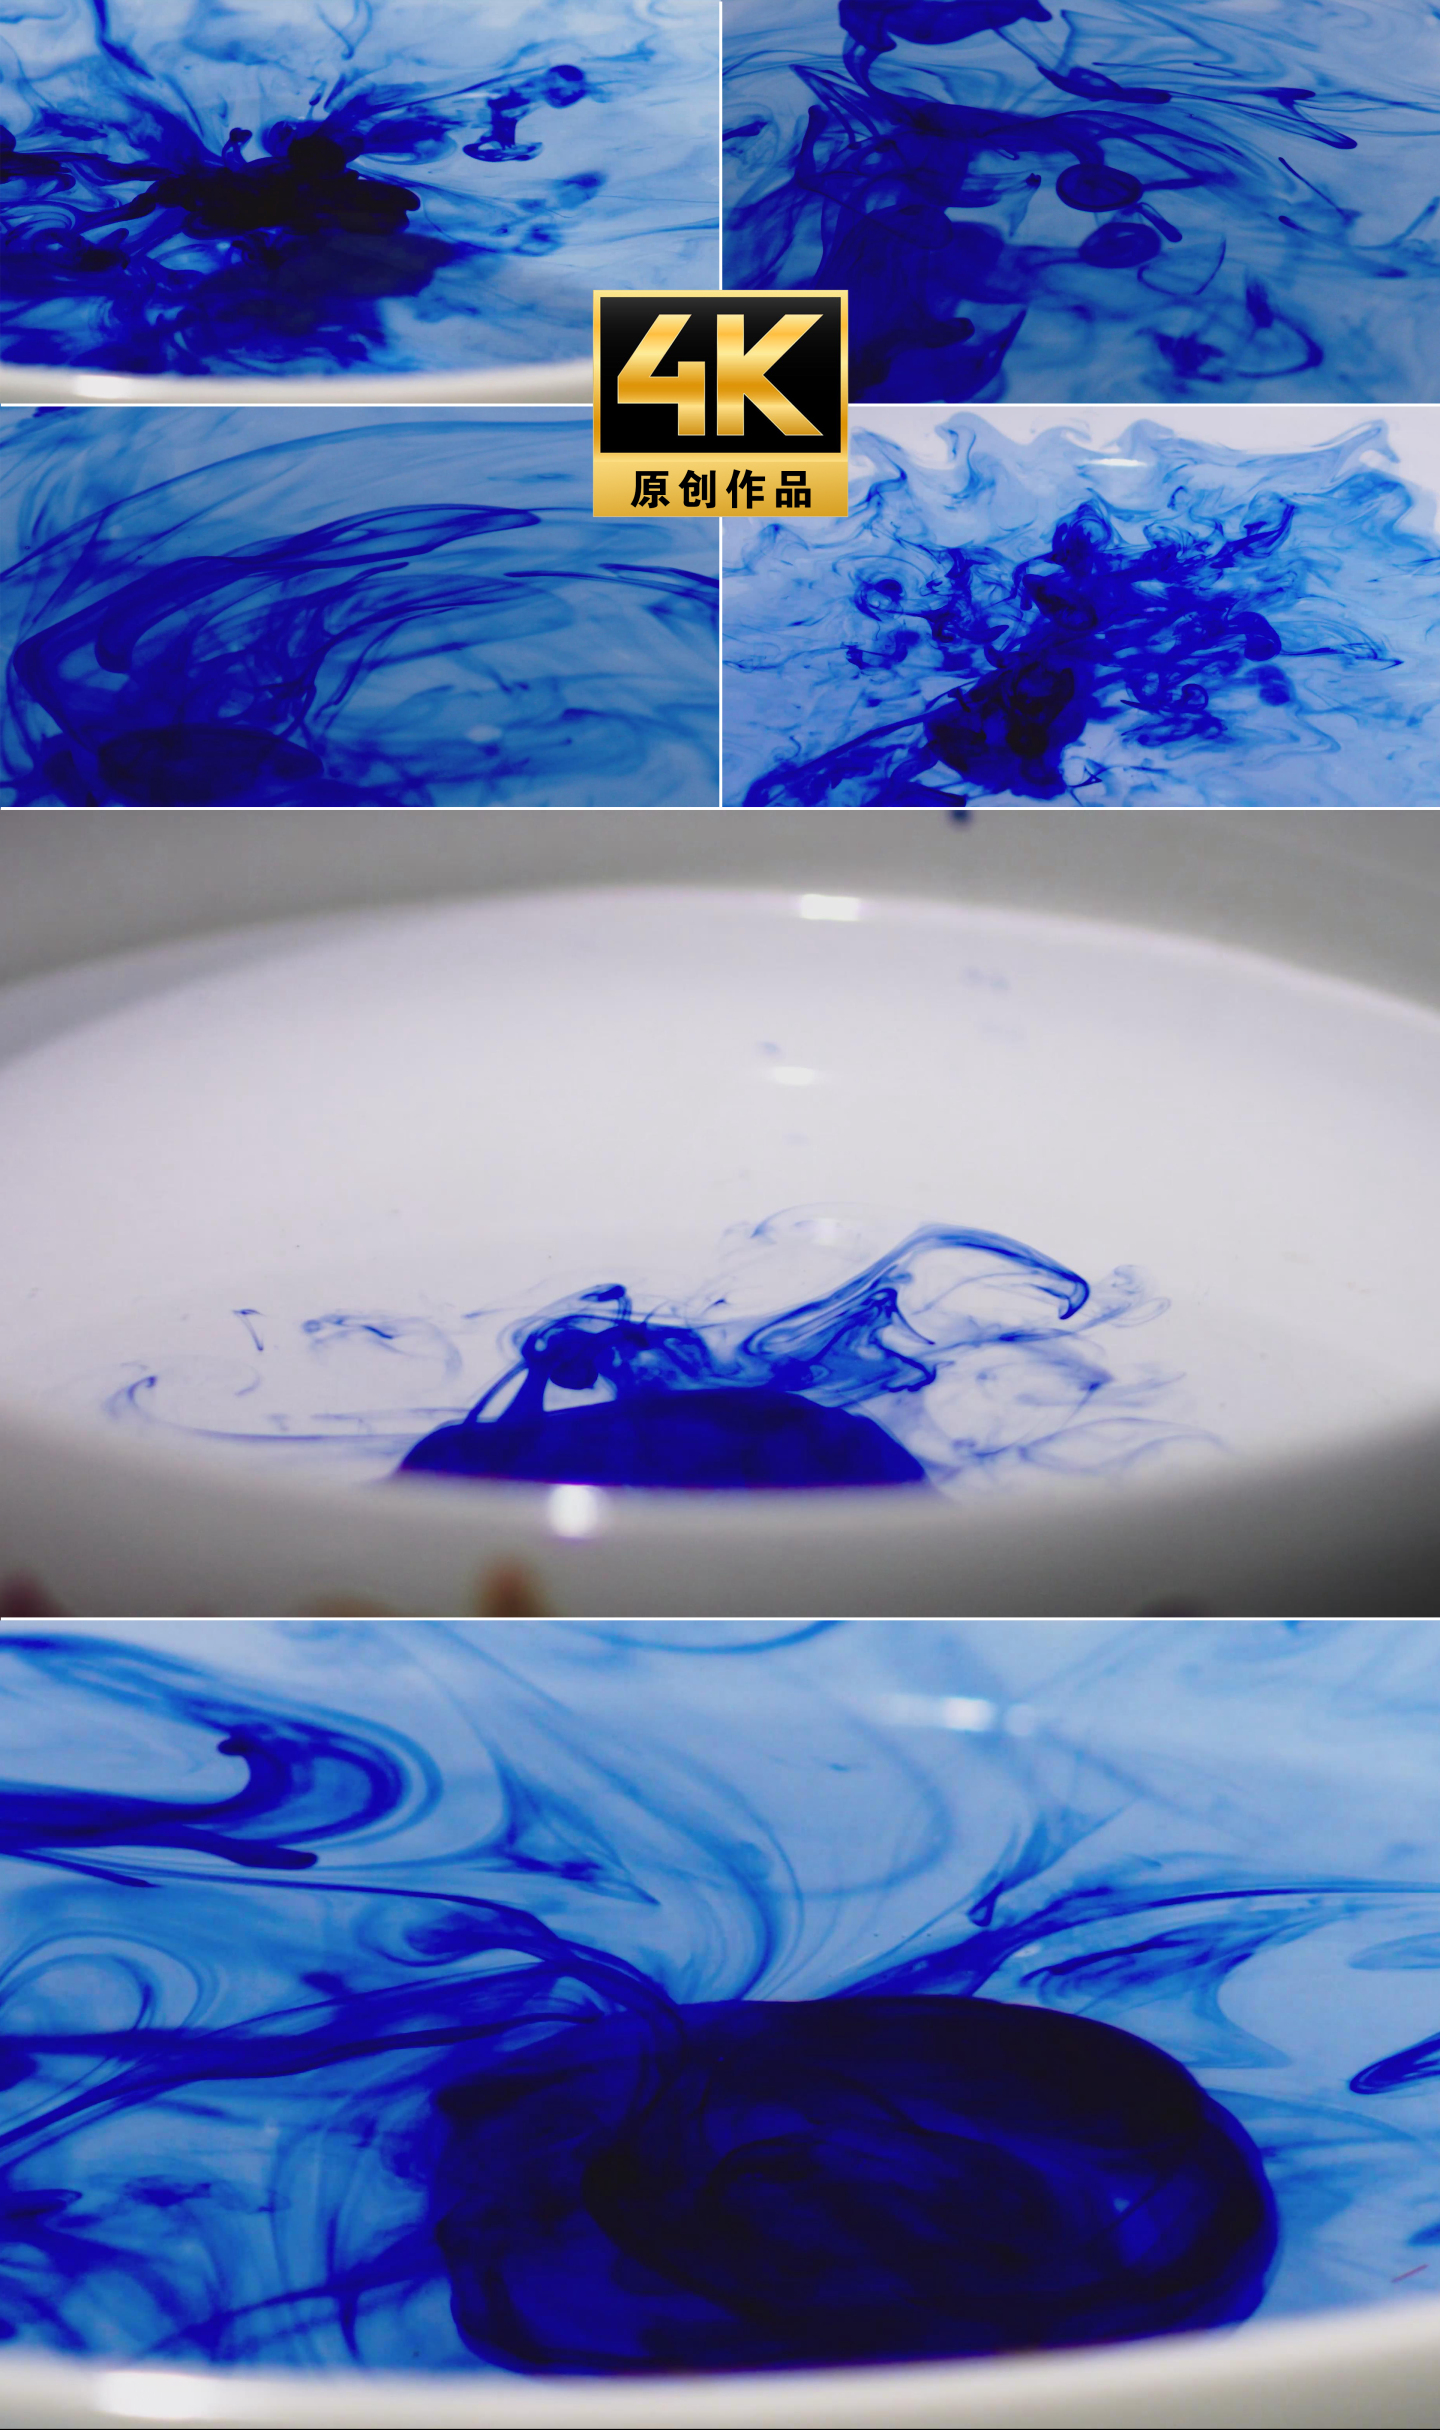 【4K】蓝色墨水滴入水中升格